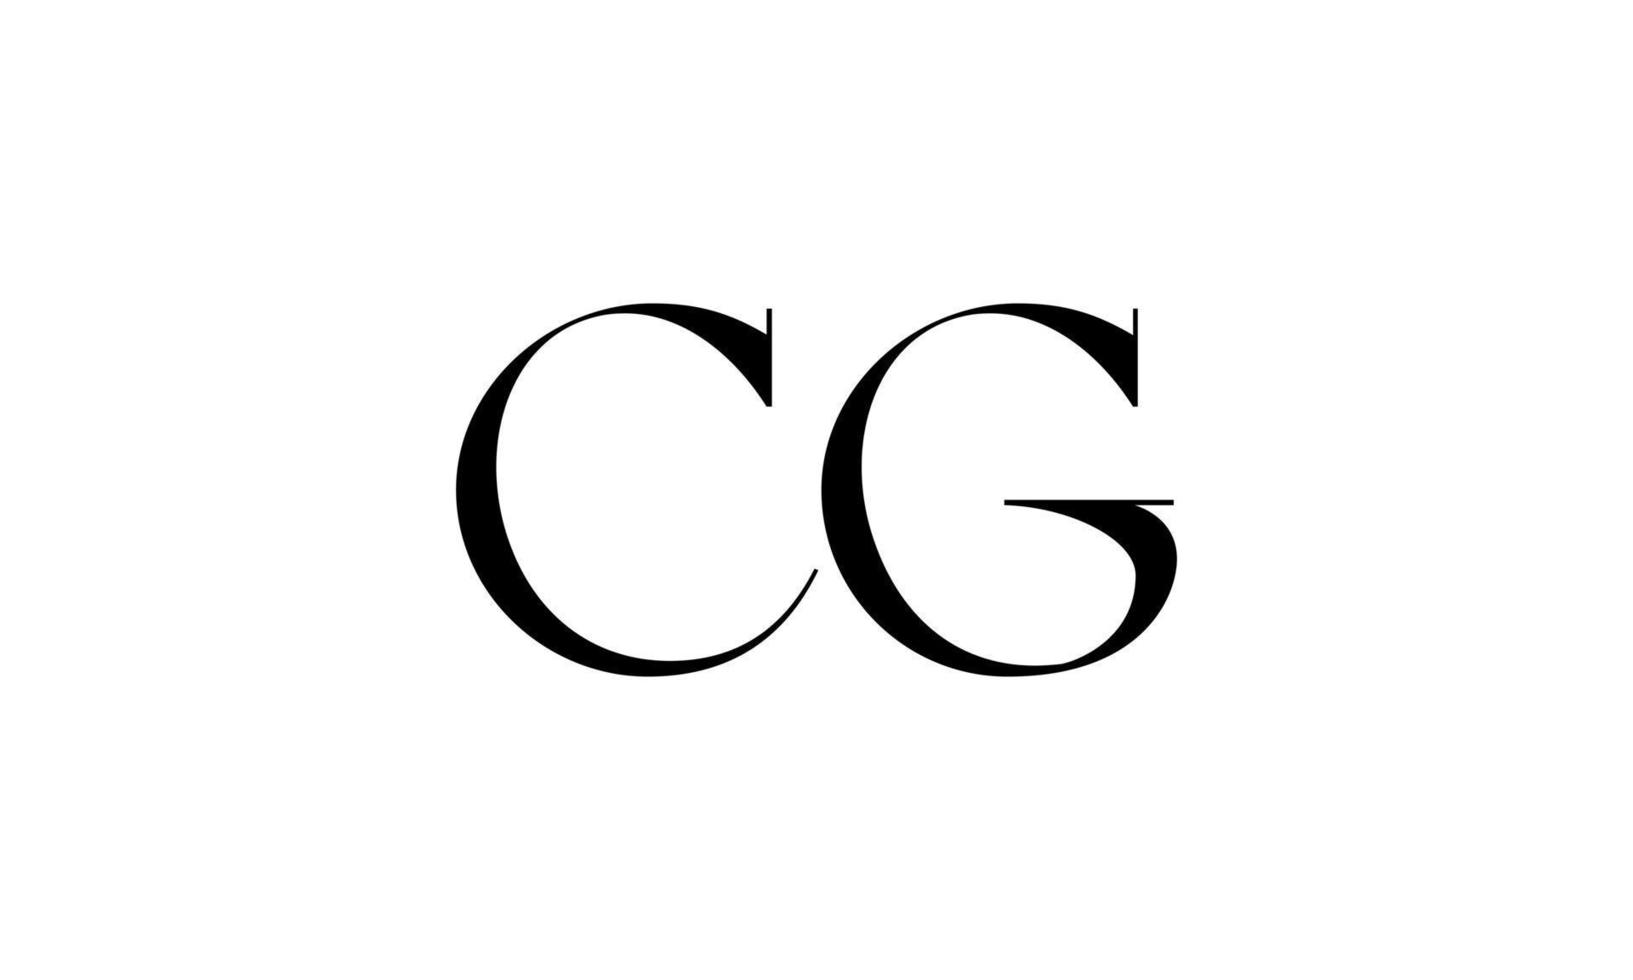 lettre cg logo pro fichier vectoriel vecteur pro